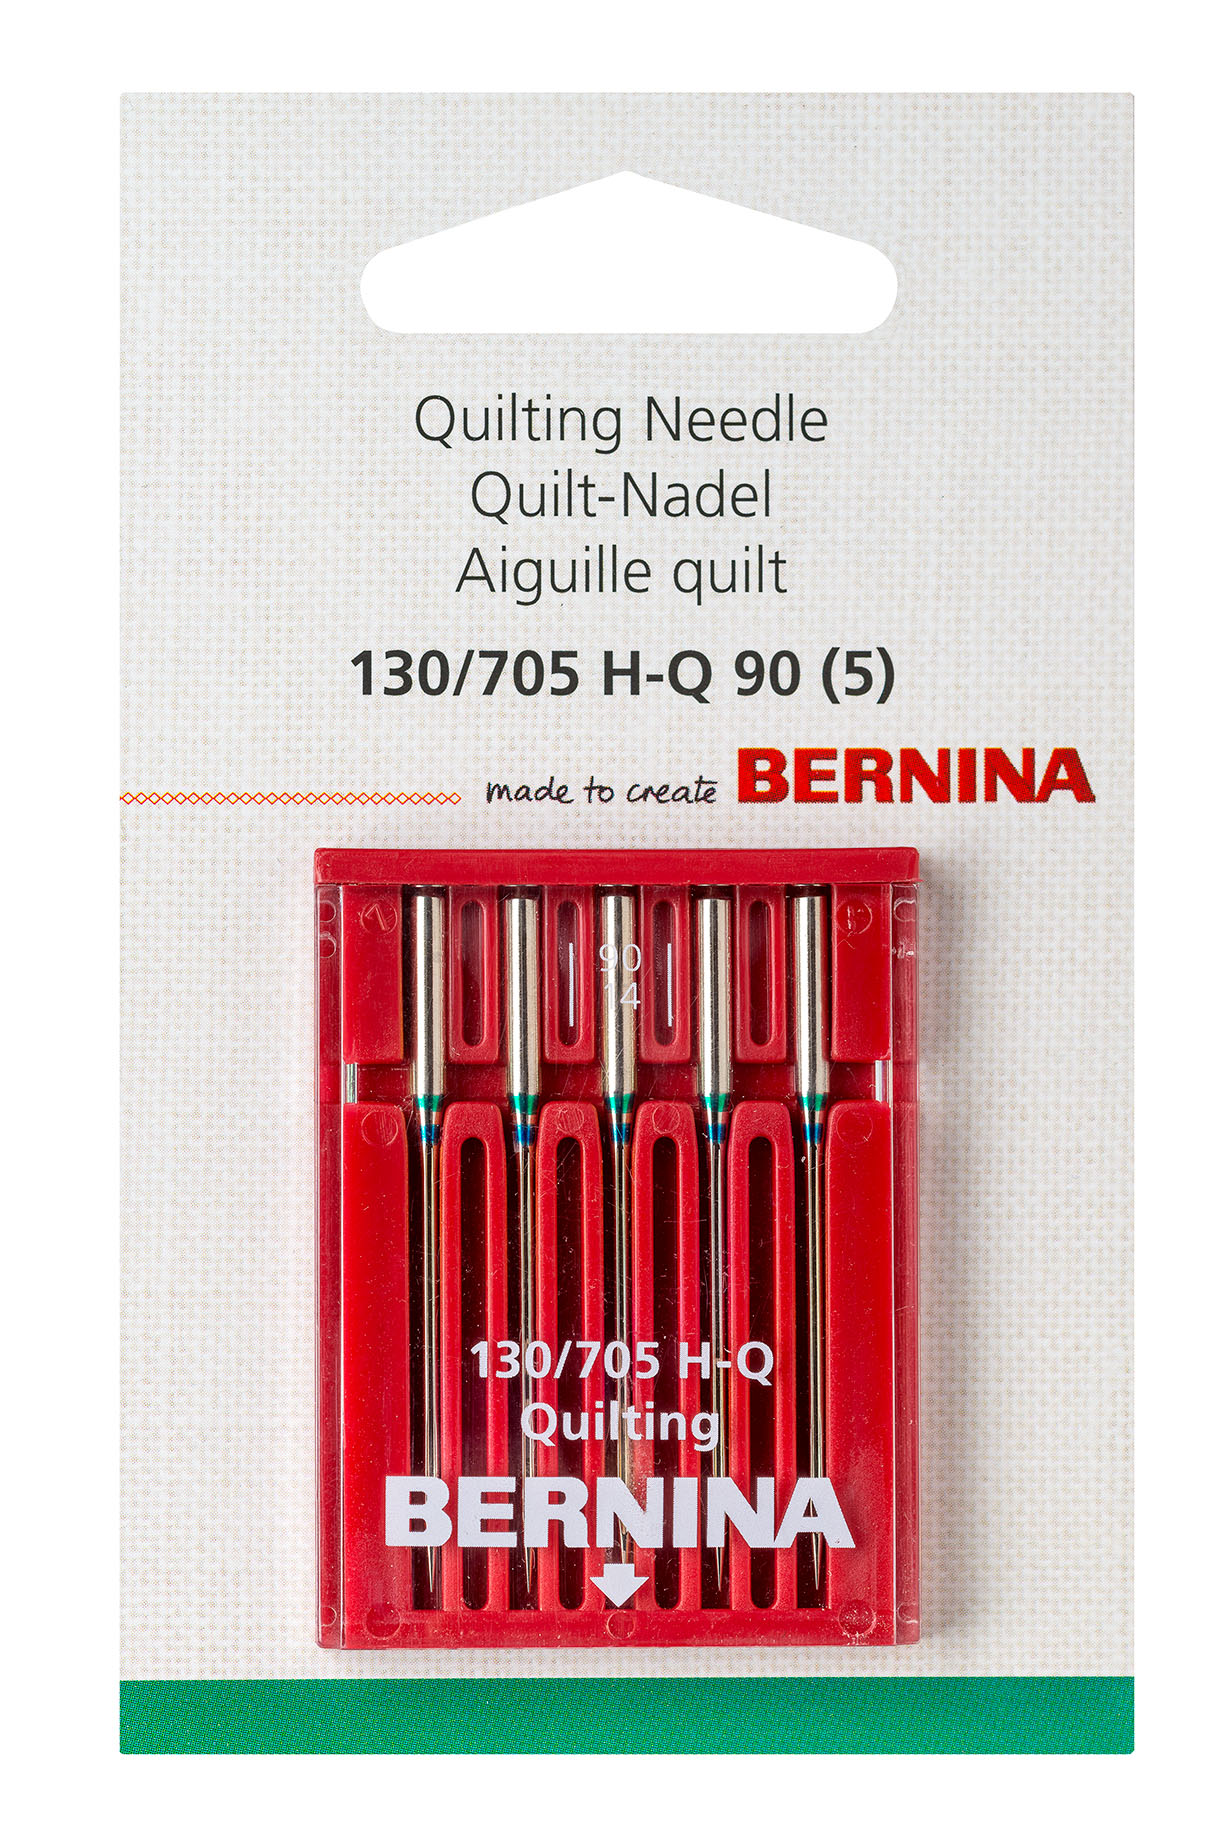 Quilting needle - Accessories - BERNINA